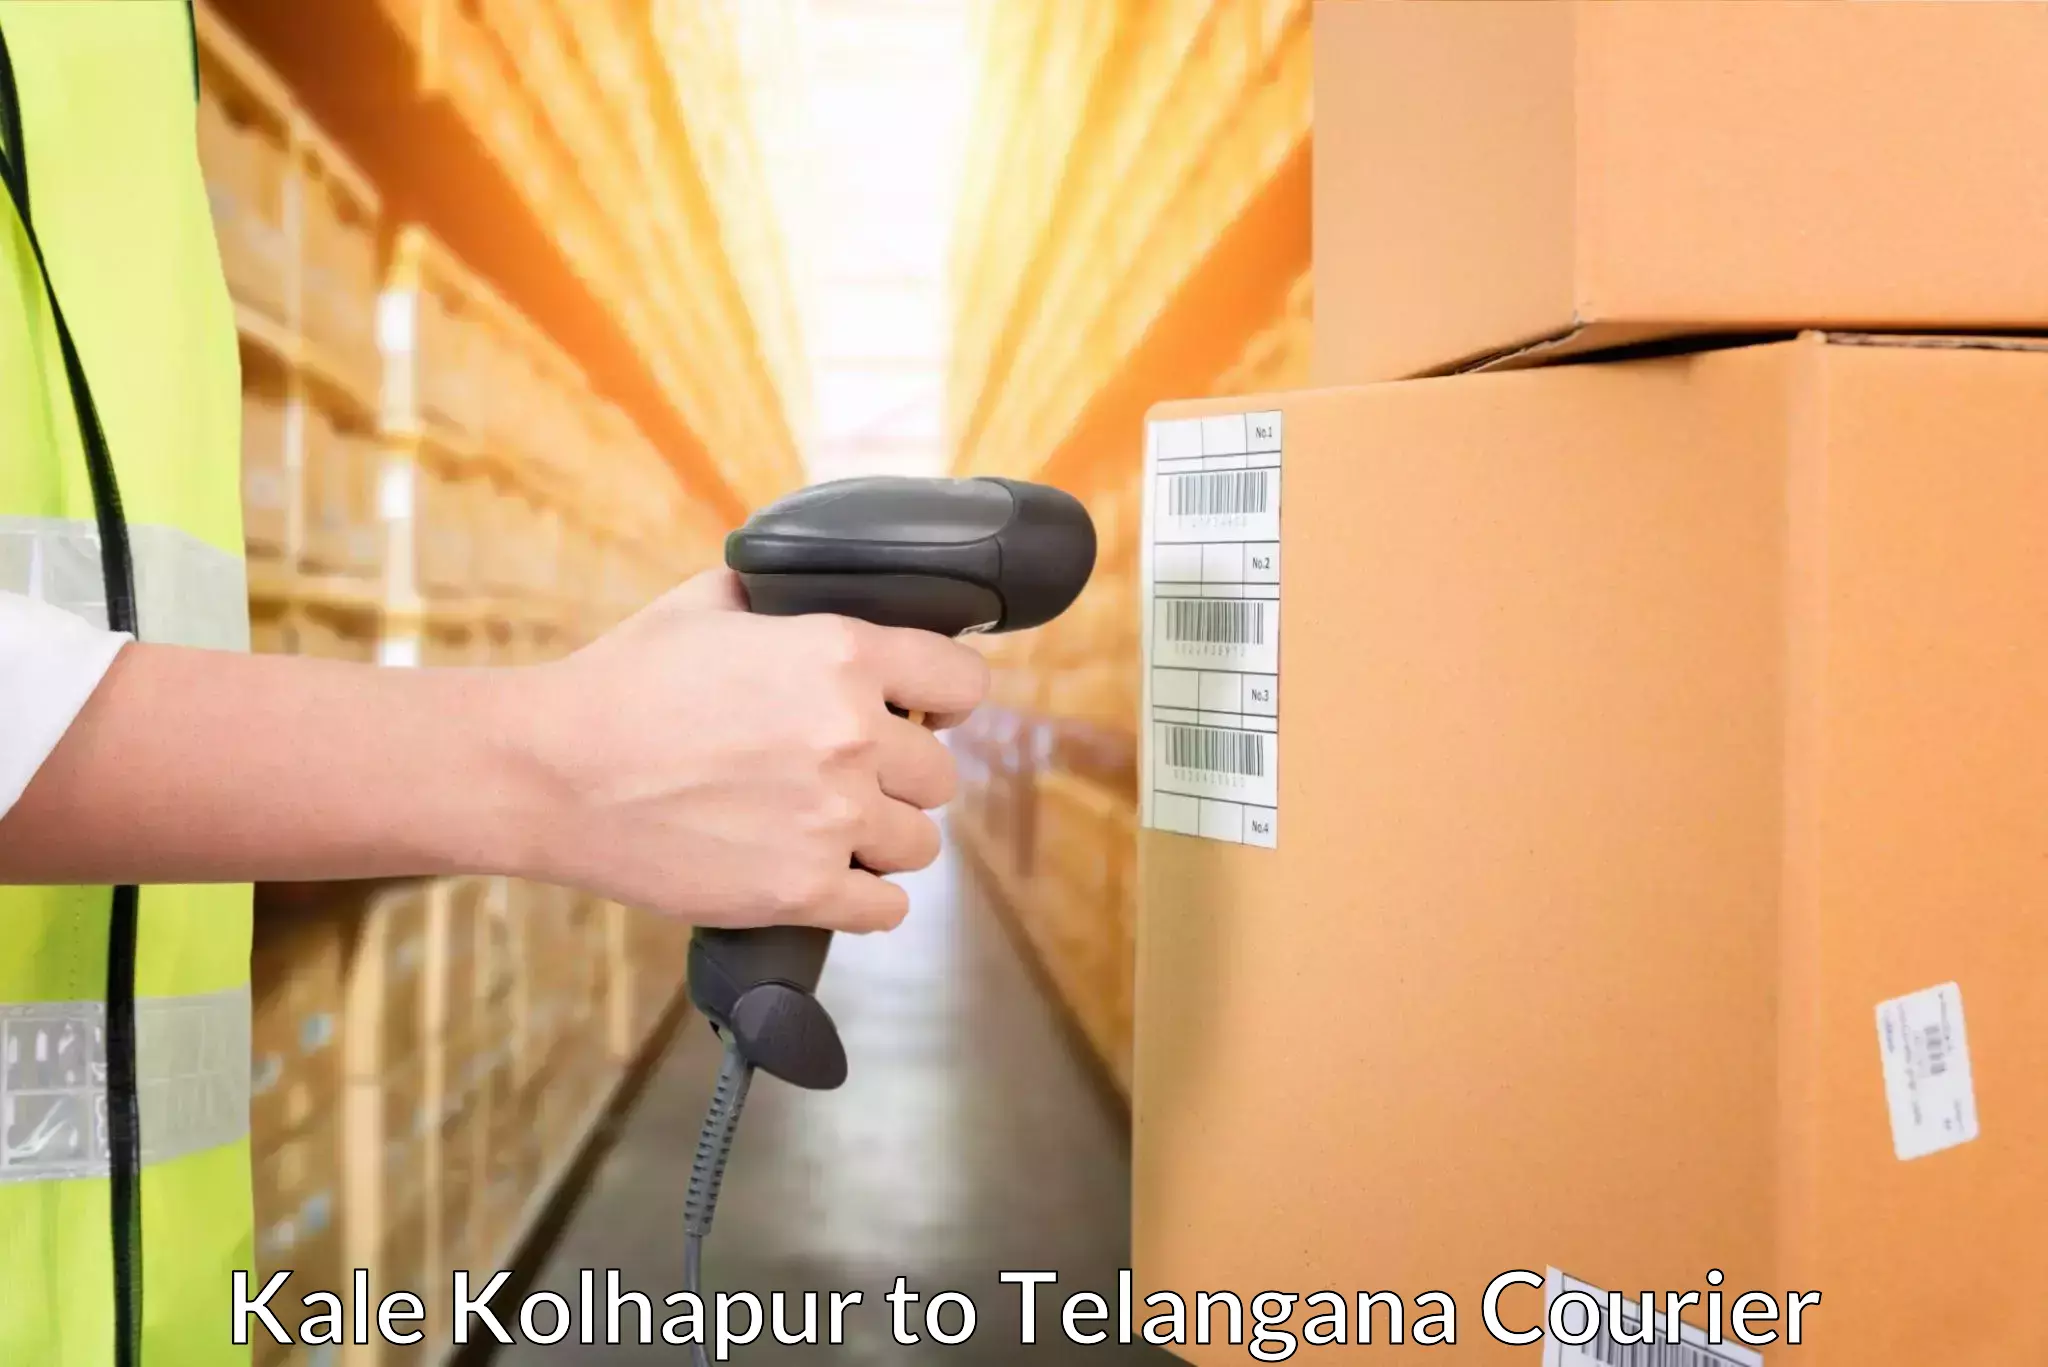 High-capacity parcel service Kale Kolhapur to Madhavaram